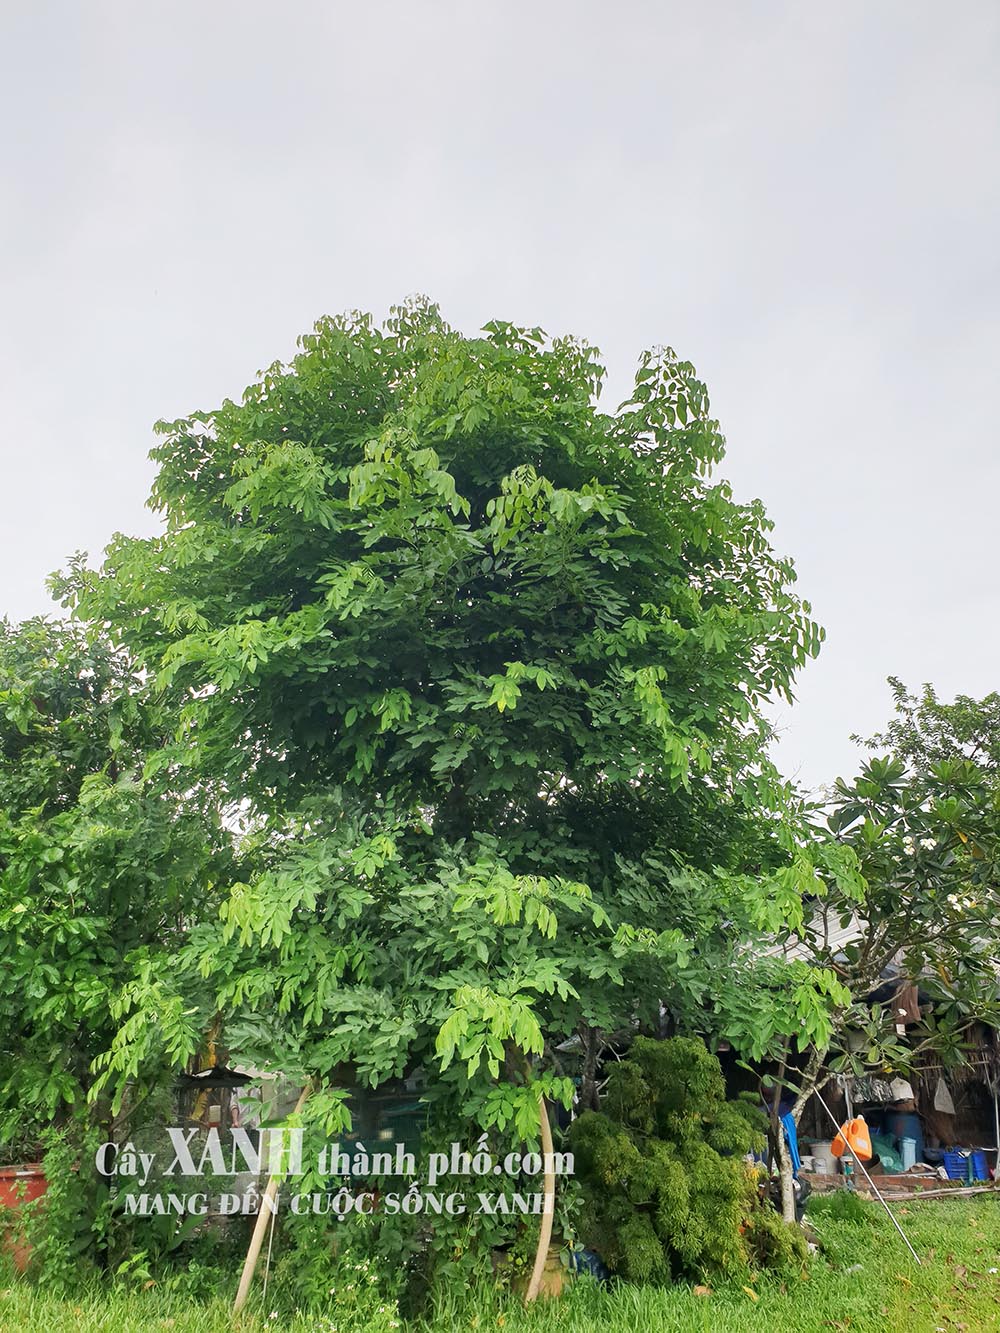 cây osaka to, gốc lớn, dáng đẹp trồng tại vườn, giá rẻ ở hcm